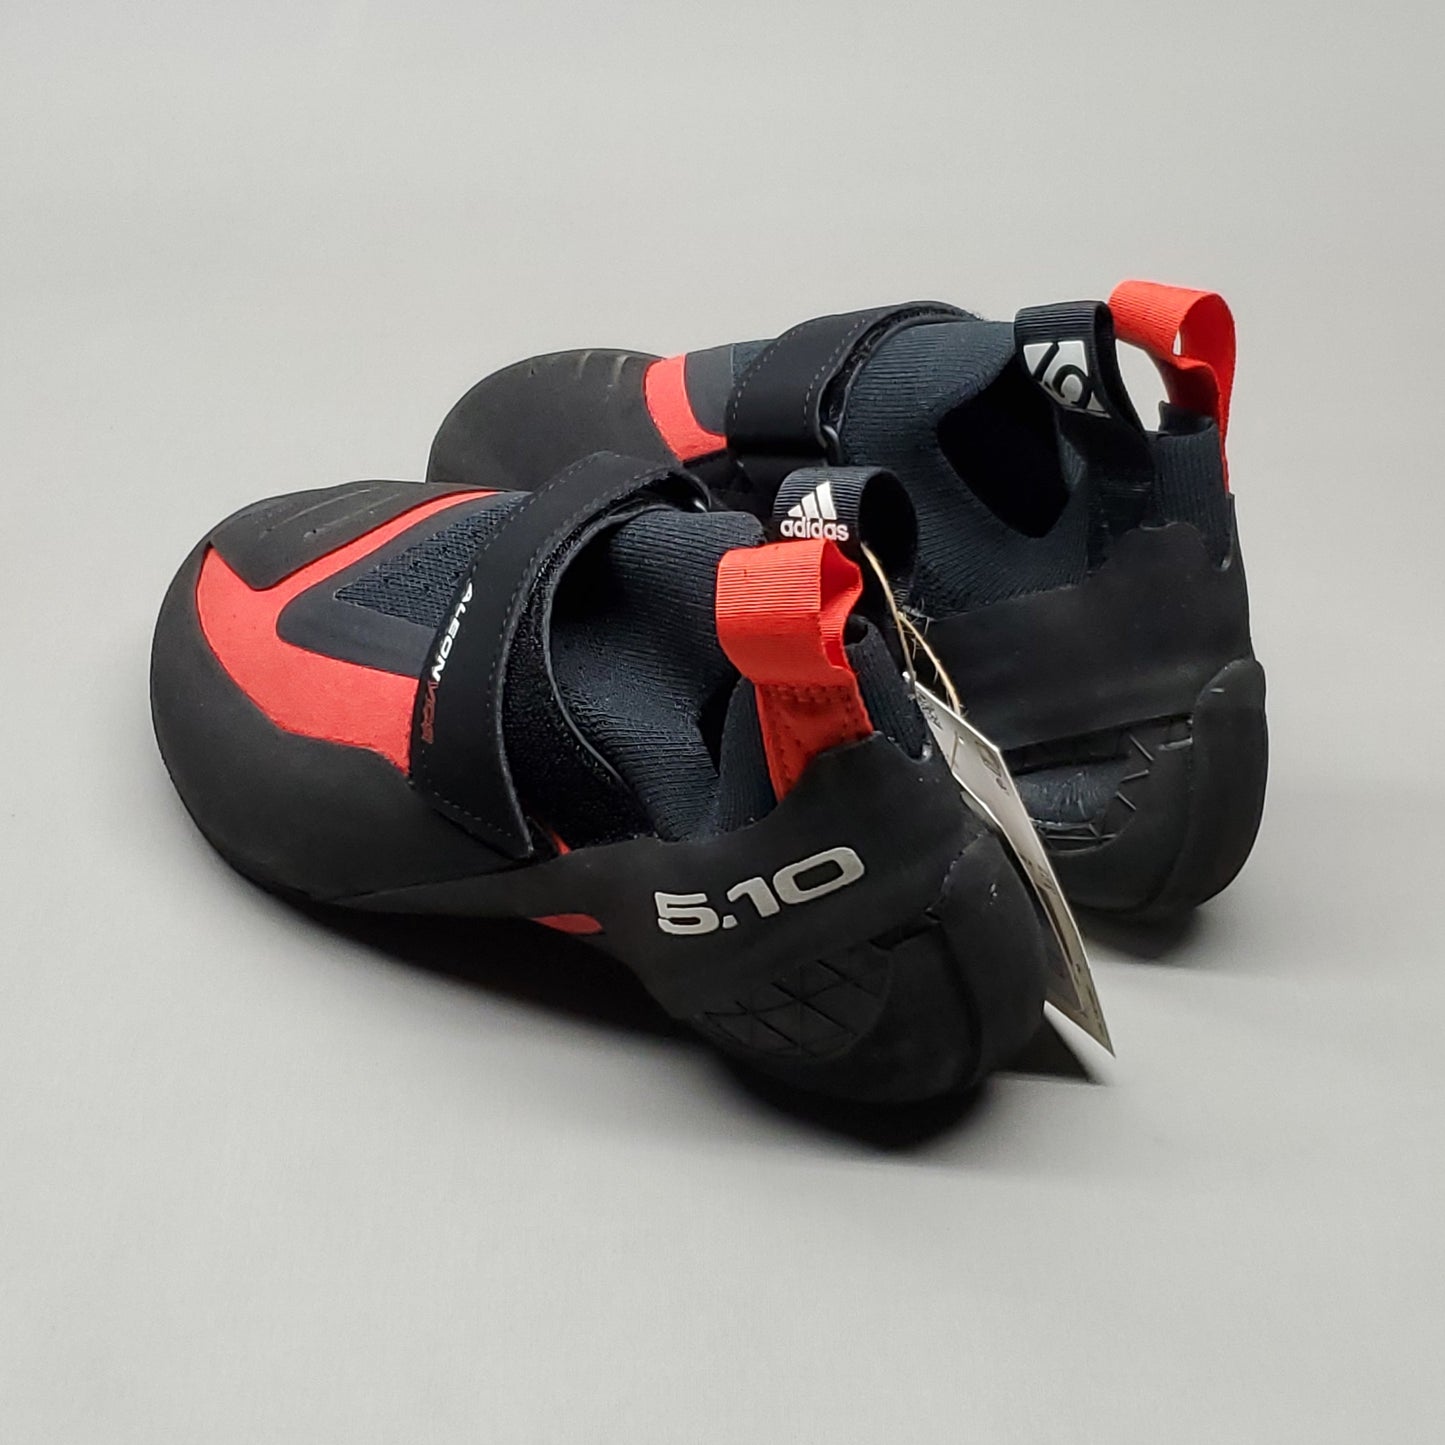 ADIDAS Five Ten Aleon Hook & Loop Climbing Shoes Men's Sz 7 Black/Red BC0861 (New)